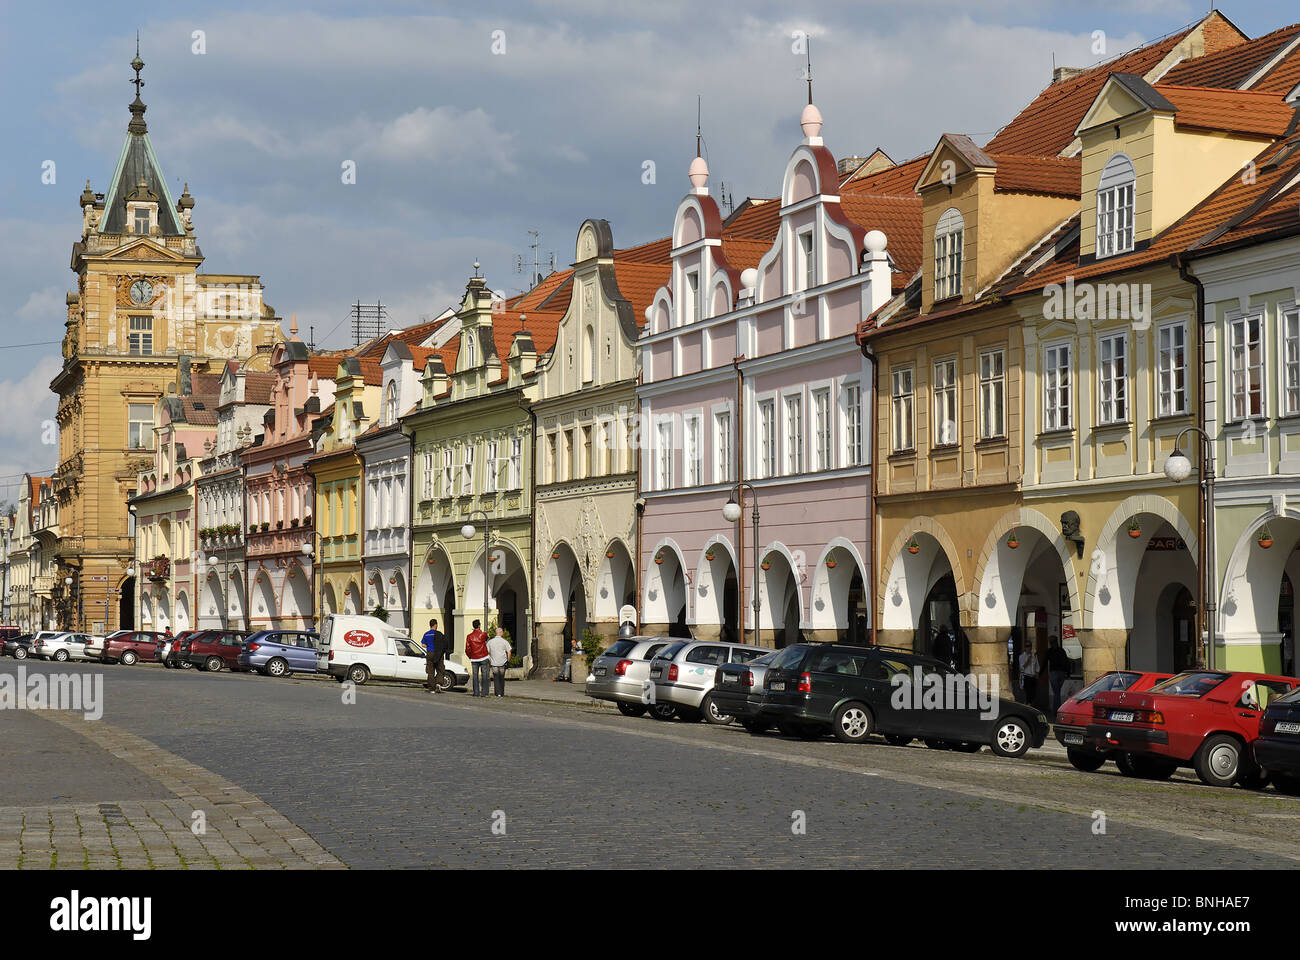 historische alte Stadt Domazlice Böhmen Tschechien Tschechische